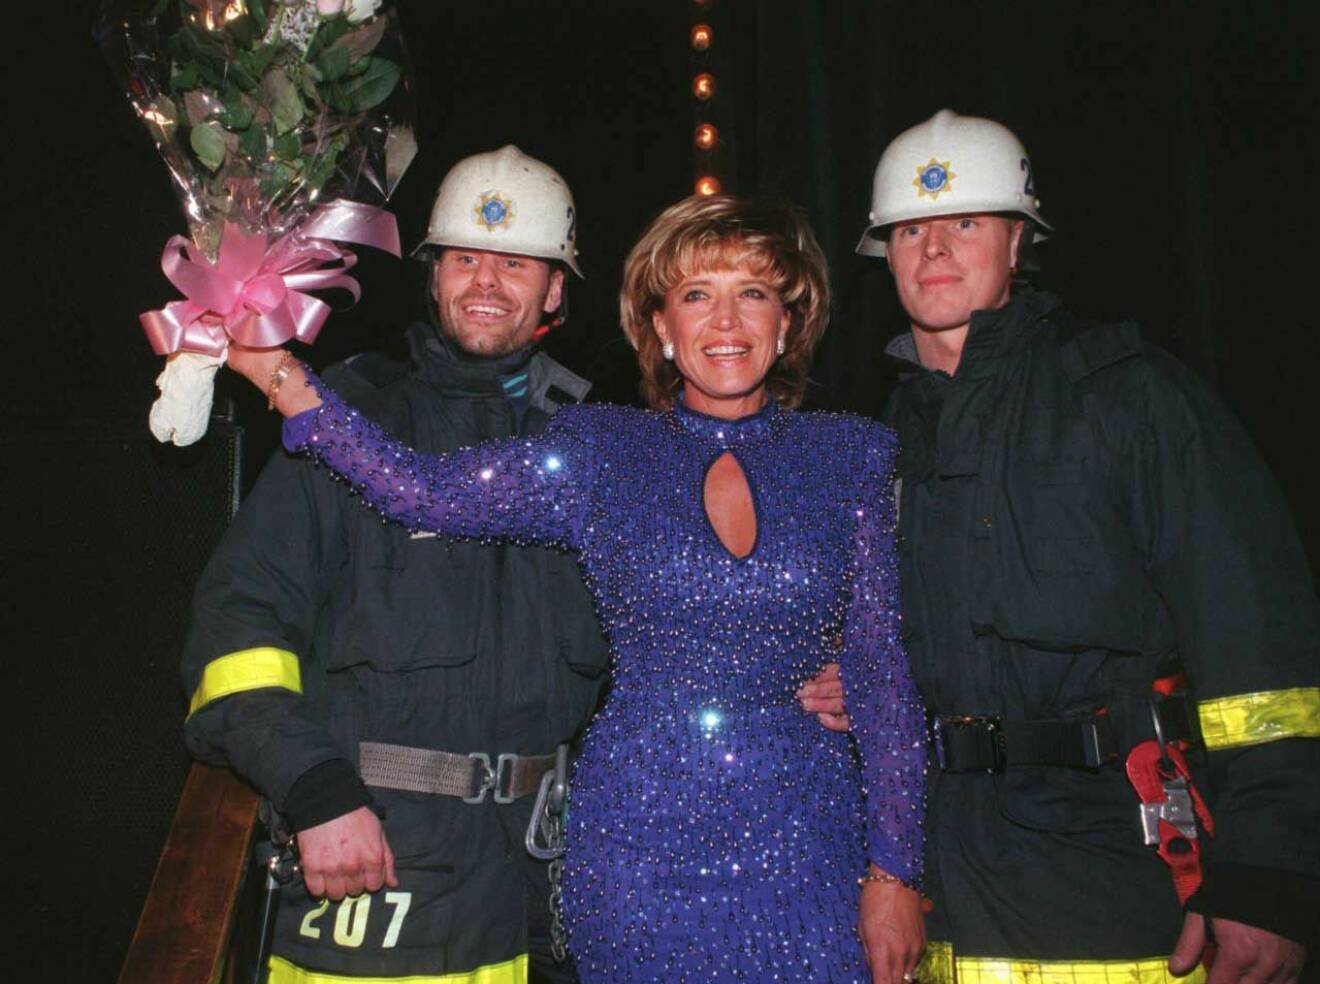 Vilken härlig jubilar! Barbro fick stilig hjälp upp på scenen av två brandmän från Stockholms brandkår.